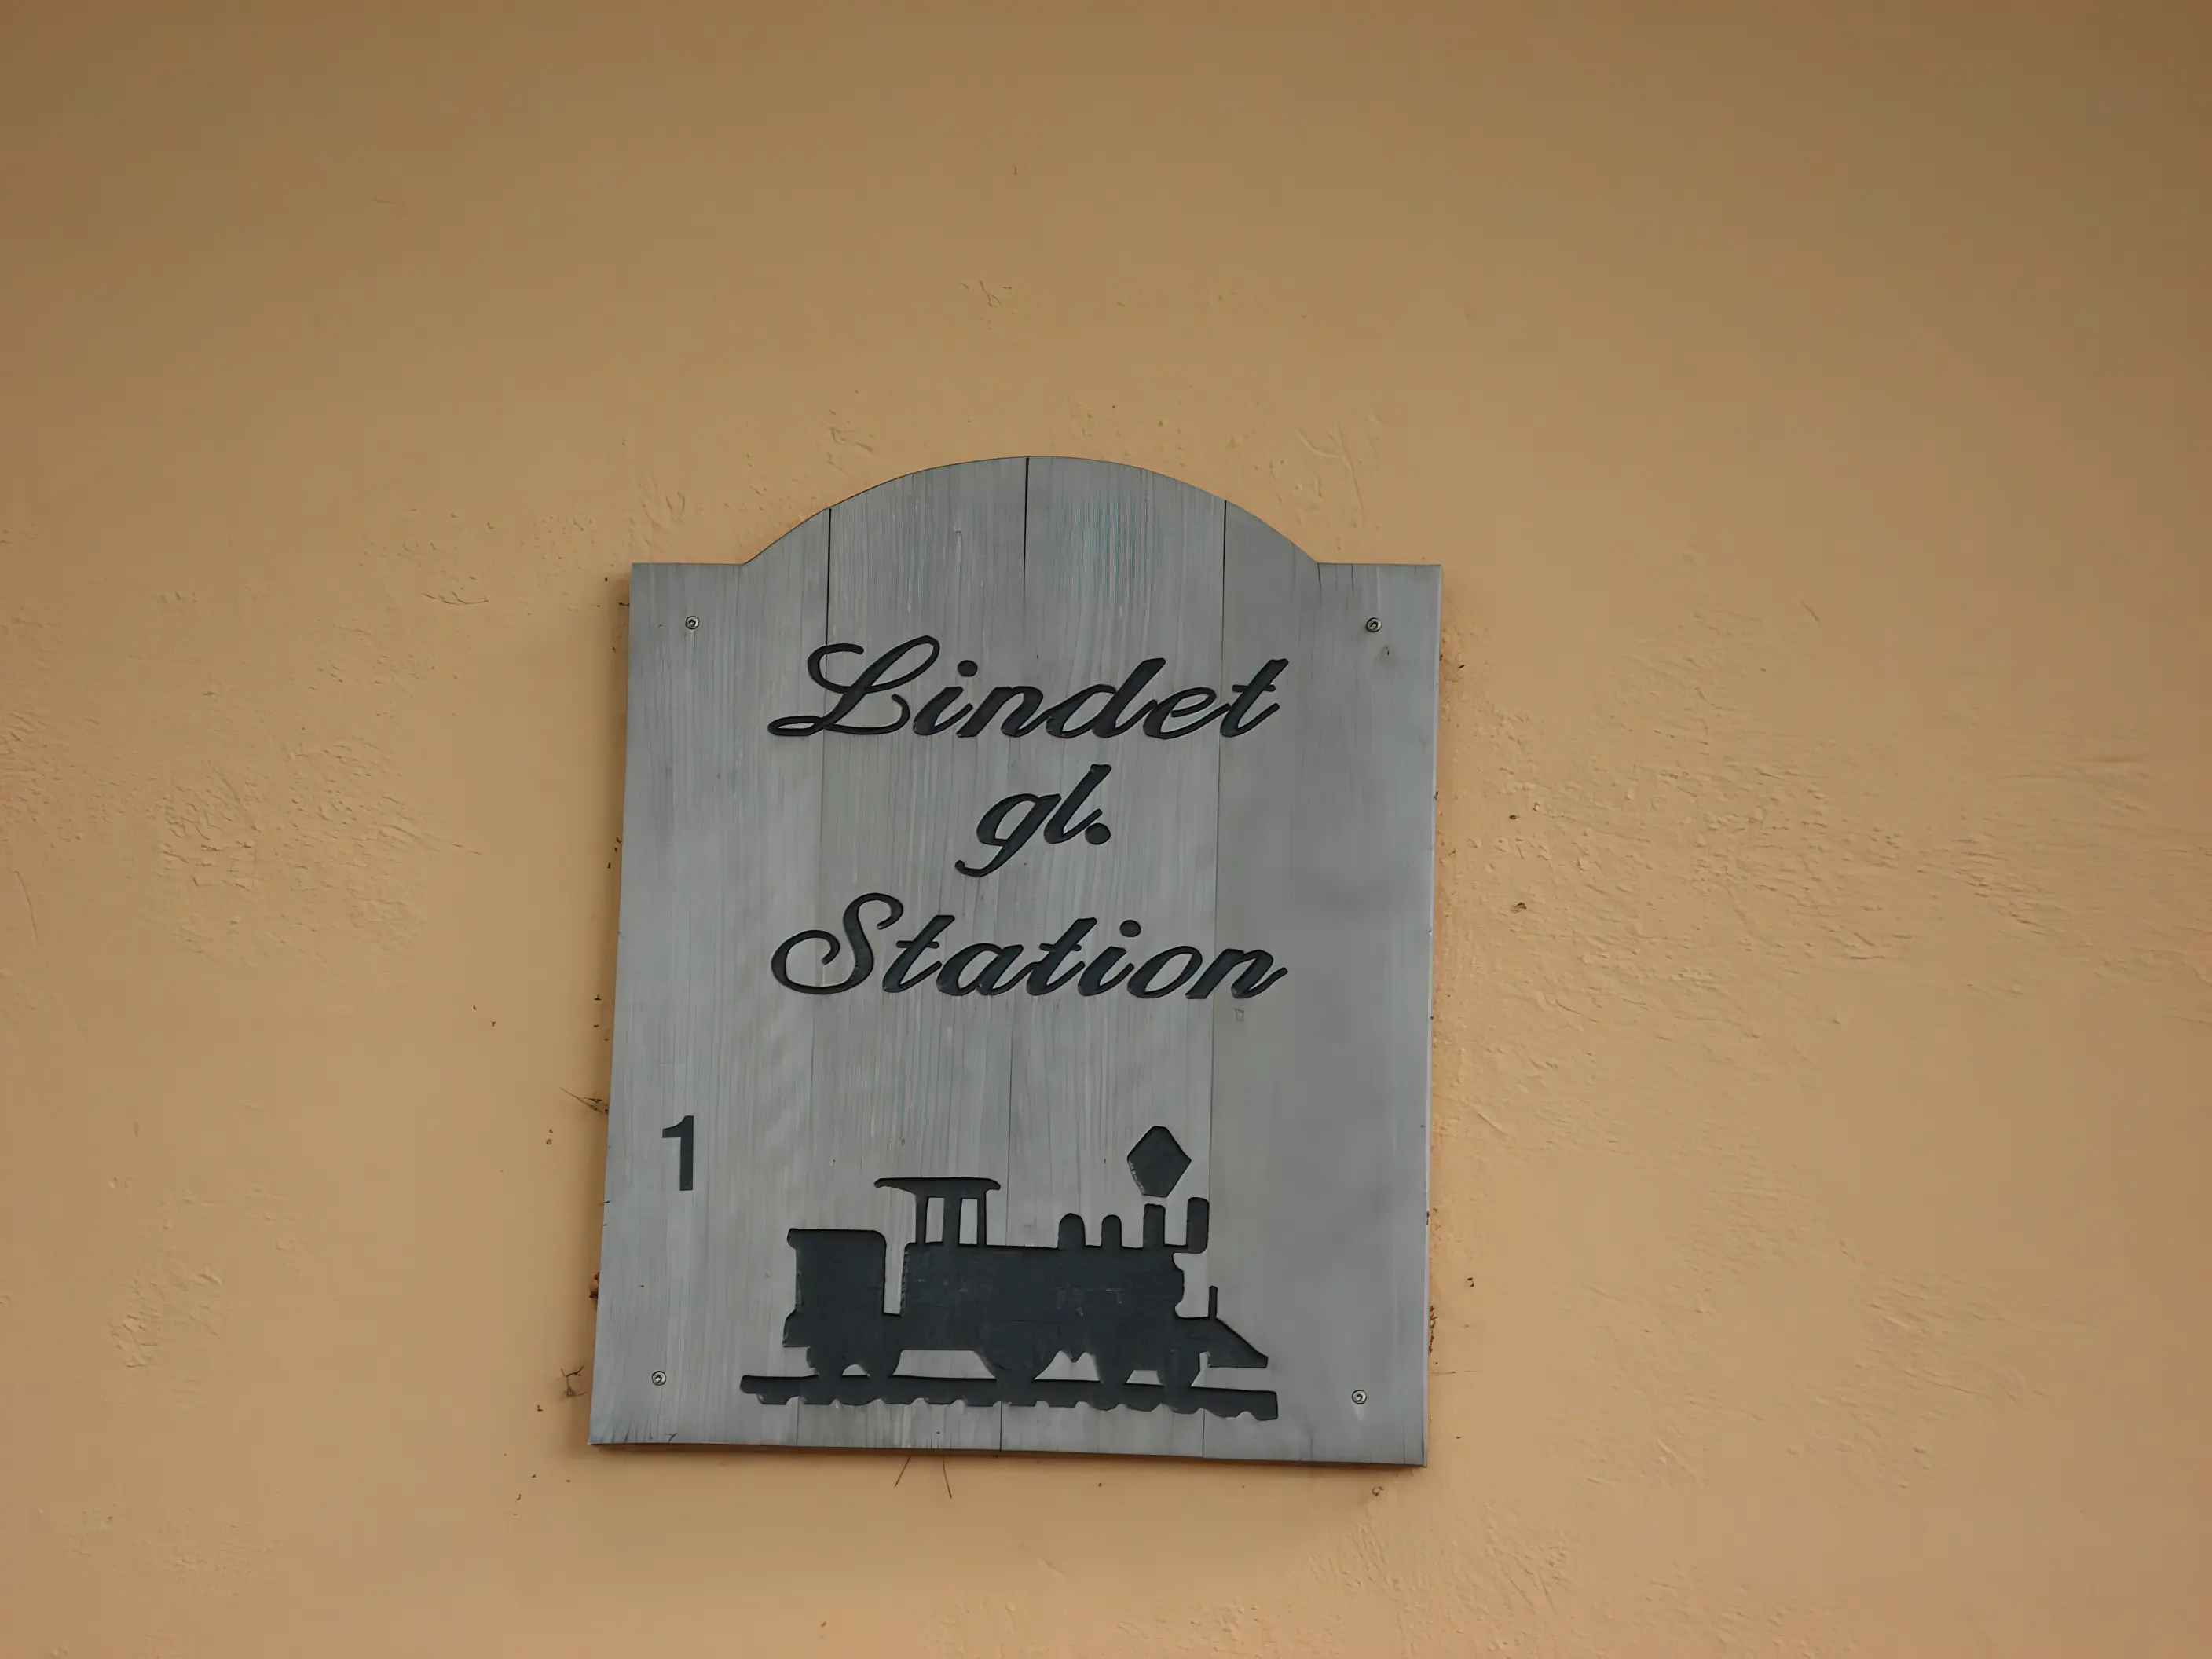 Billede af Lindet Station.